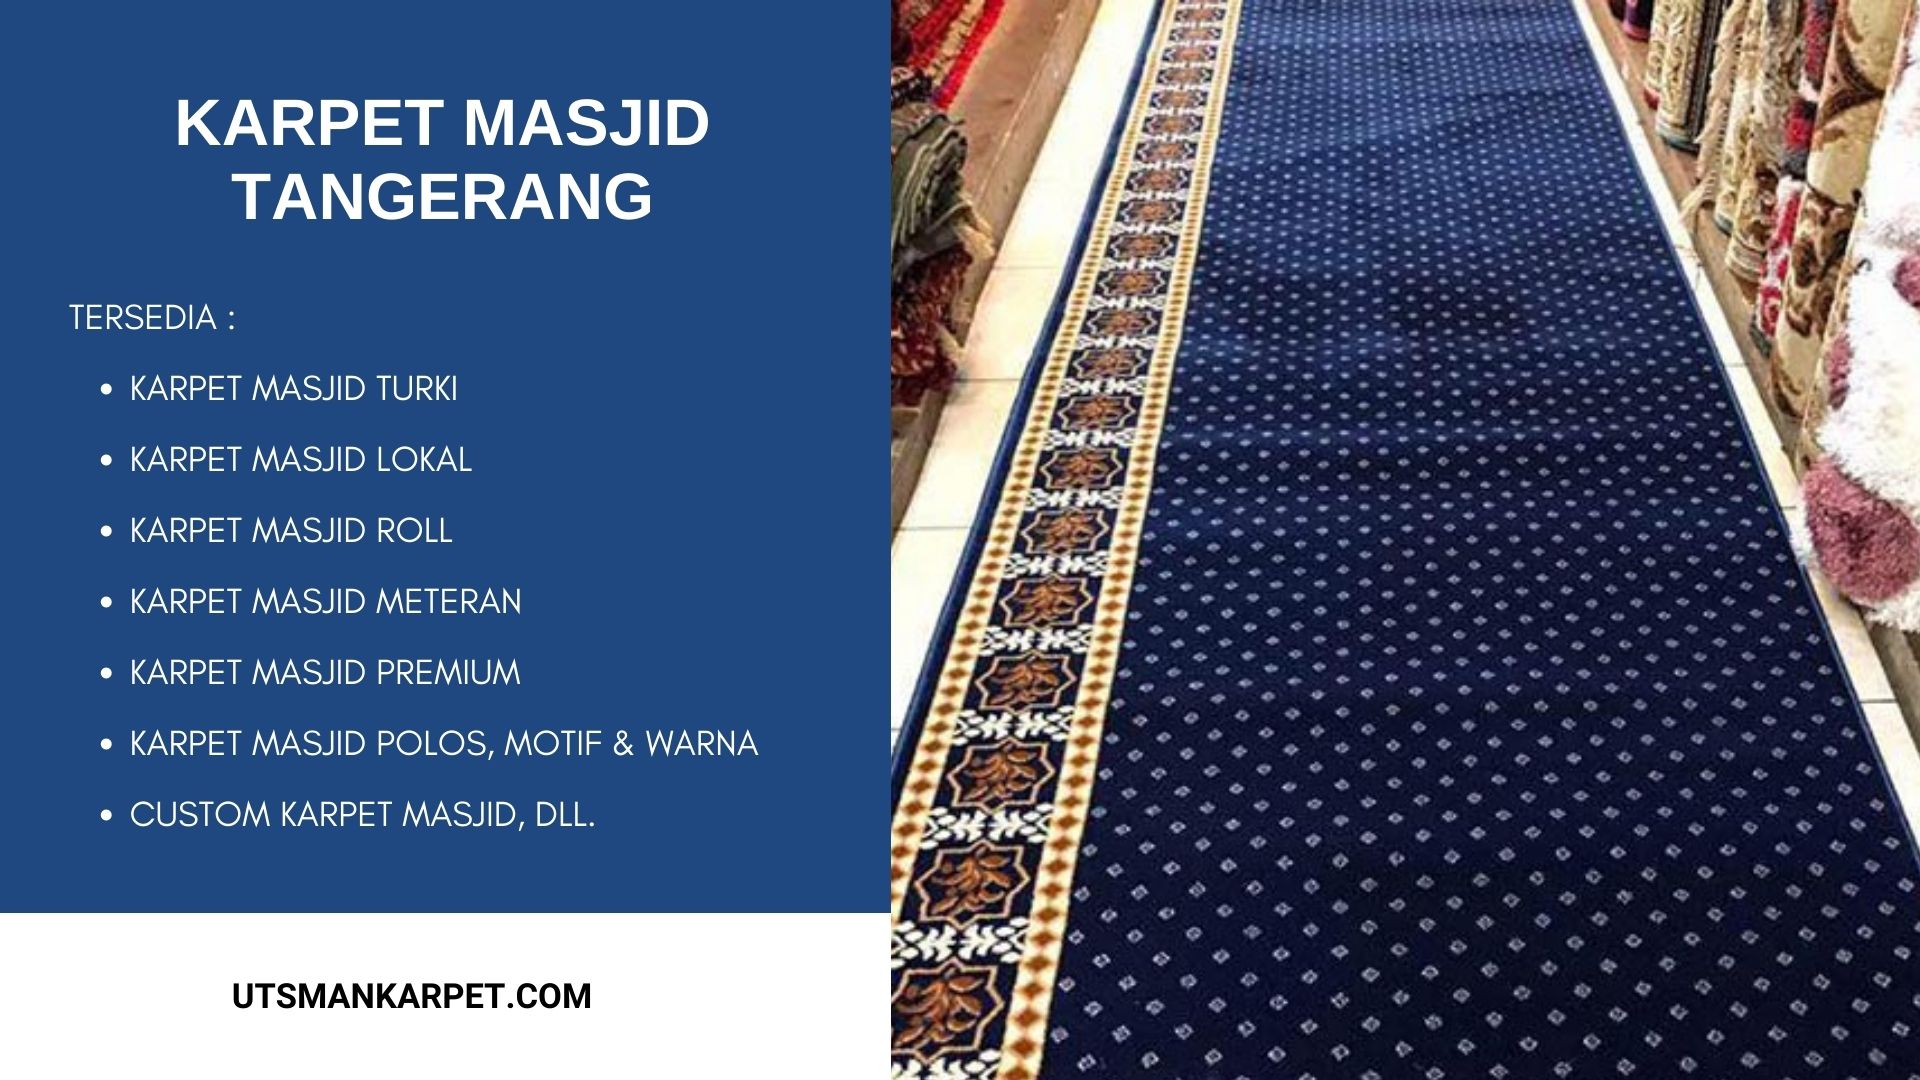 Harga Karpet Masjid Tangerang